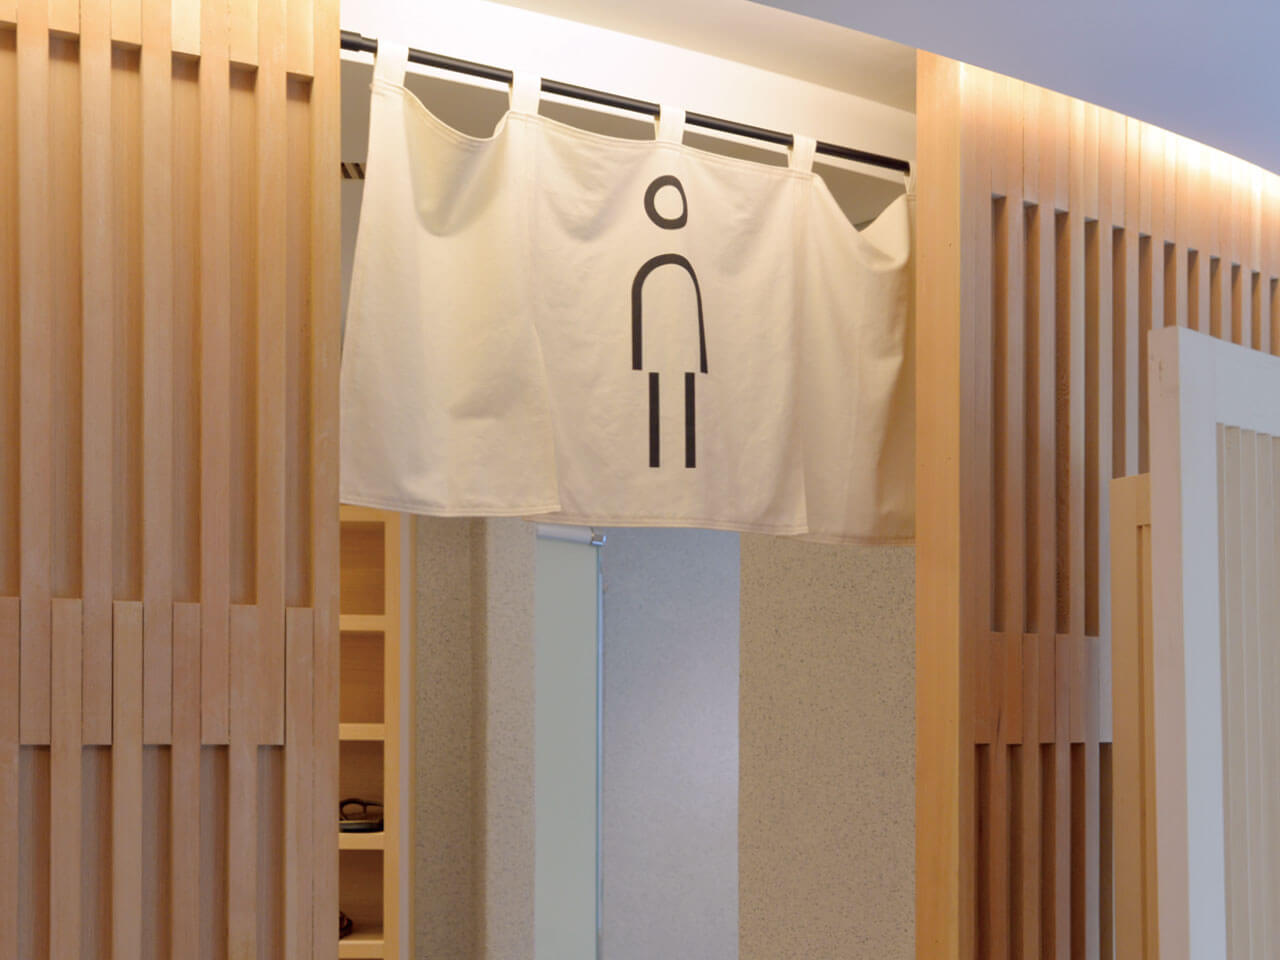 飯店酒店公共空間指標牌規劃製作 客製布簾 暖簾印刷